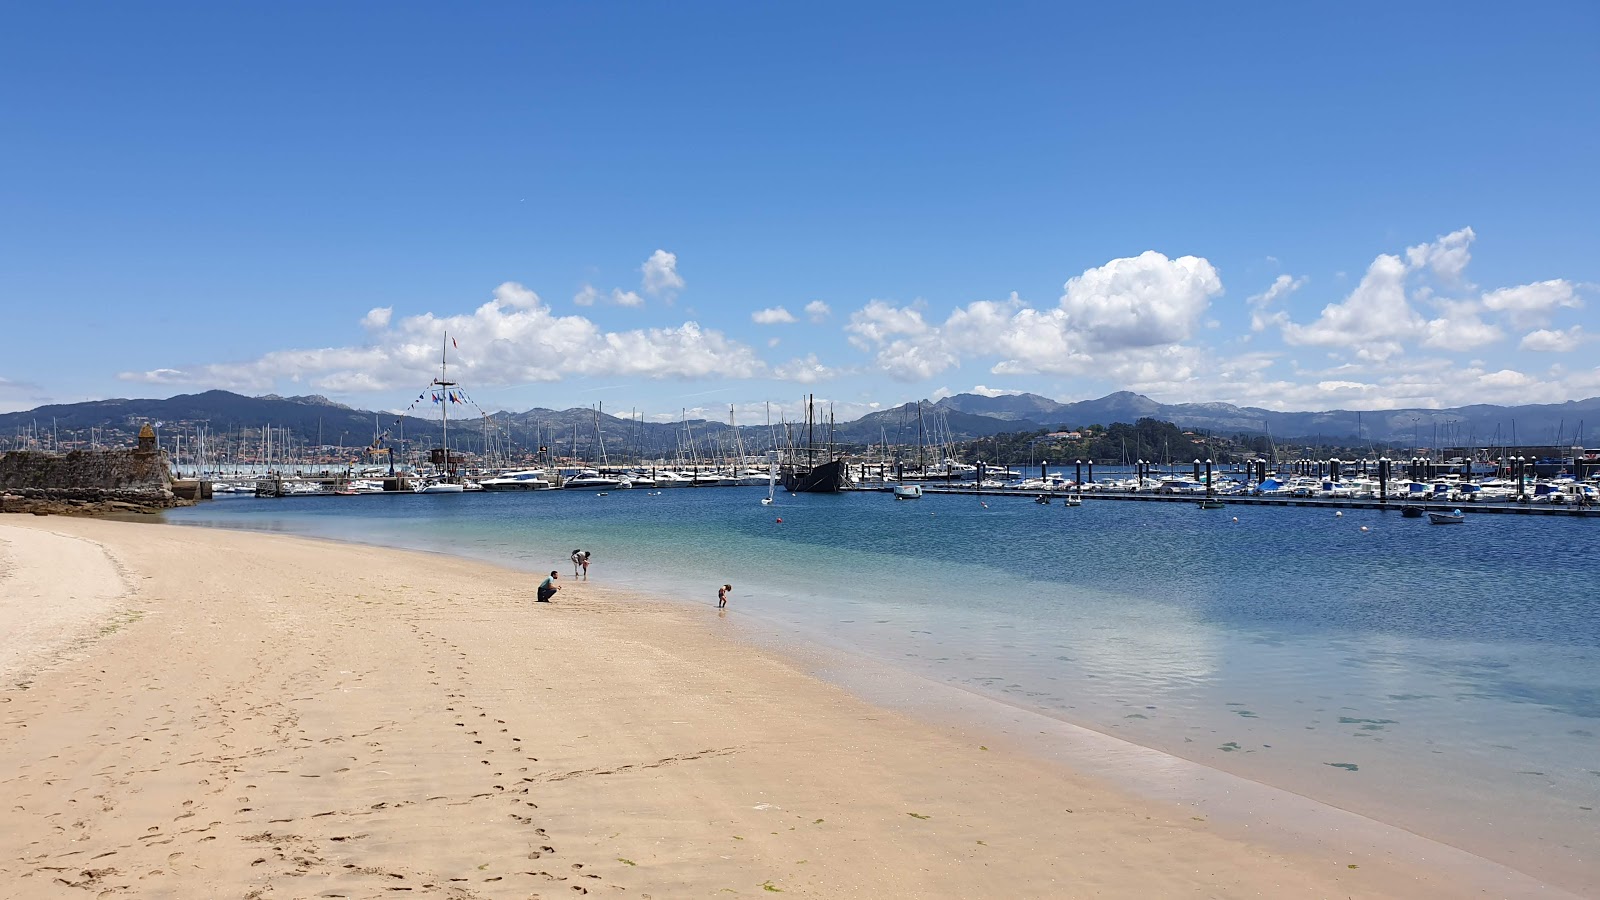 Praia da Ribeira'in fotoğrafı parlak ince kum yüzey ile